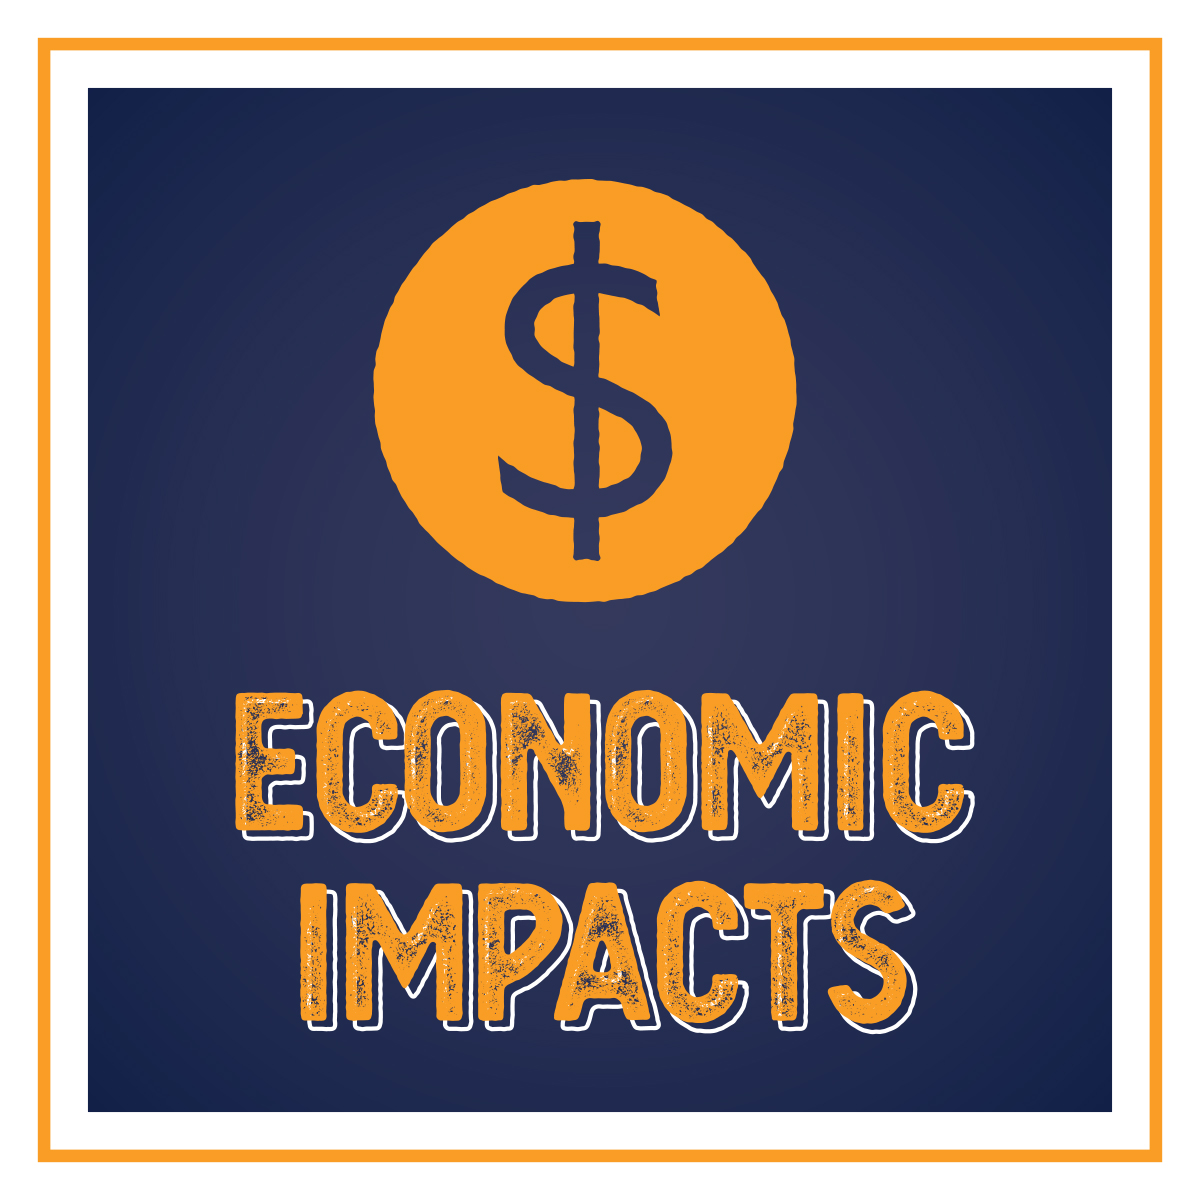 Economic impacts of Iowa's Lakes